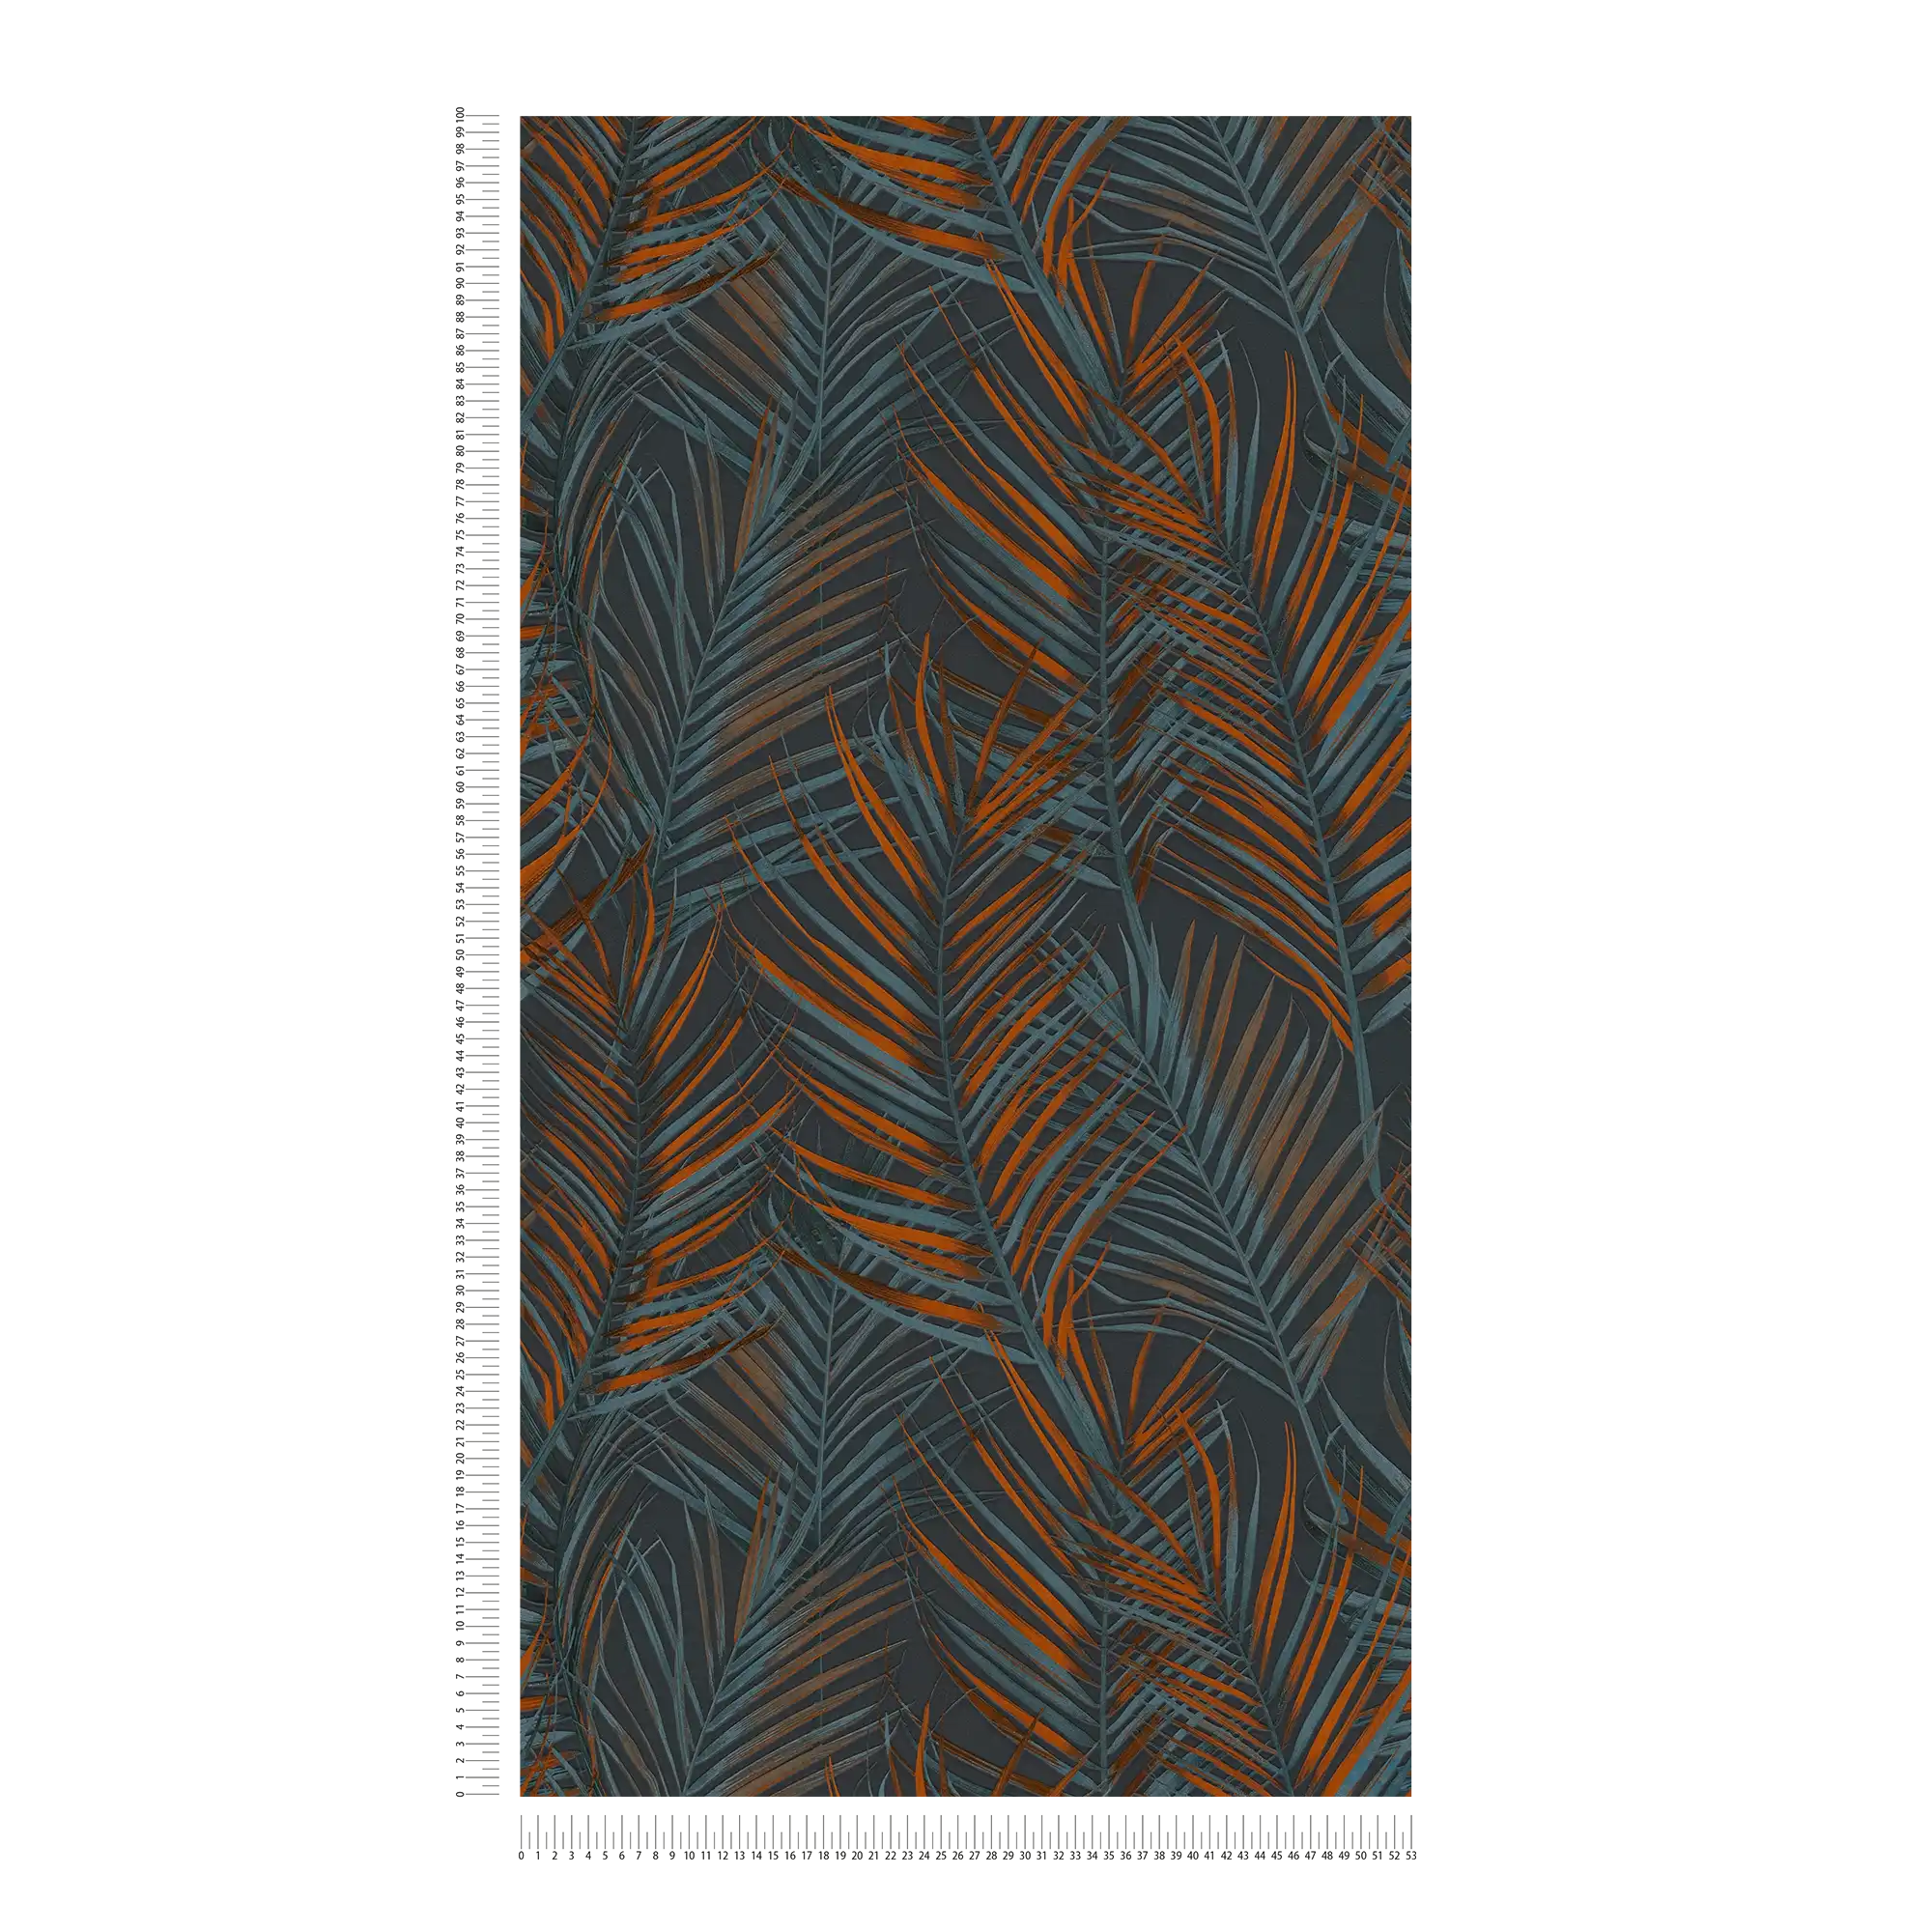             Papel pintado selva con hojas de palmera en mate - negro, naranja, petróleo
        